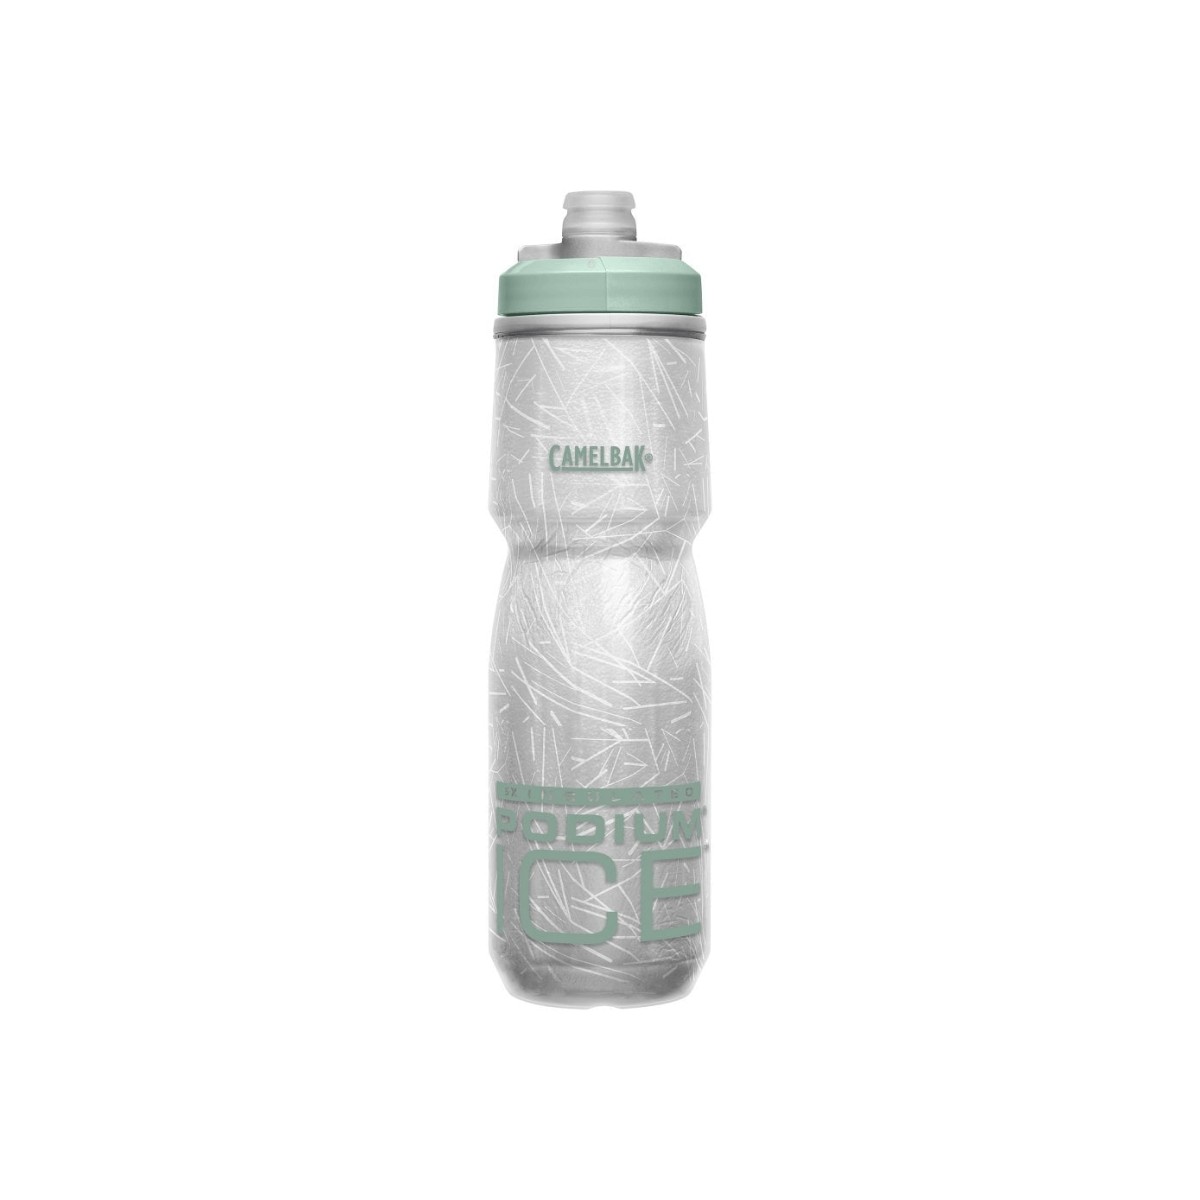 Camelbak Podium Ice 0.6 L Green Bottle